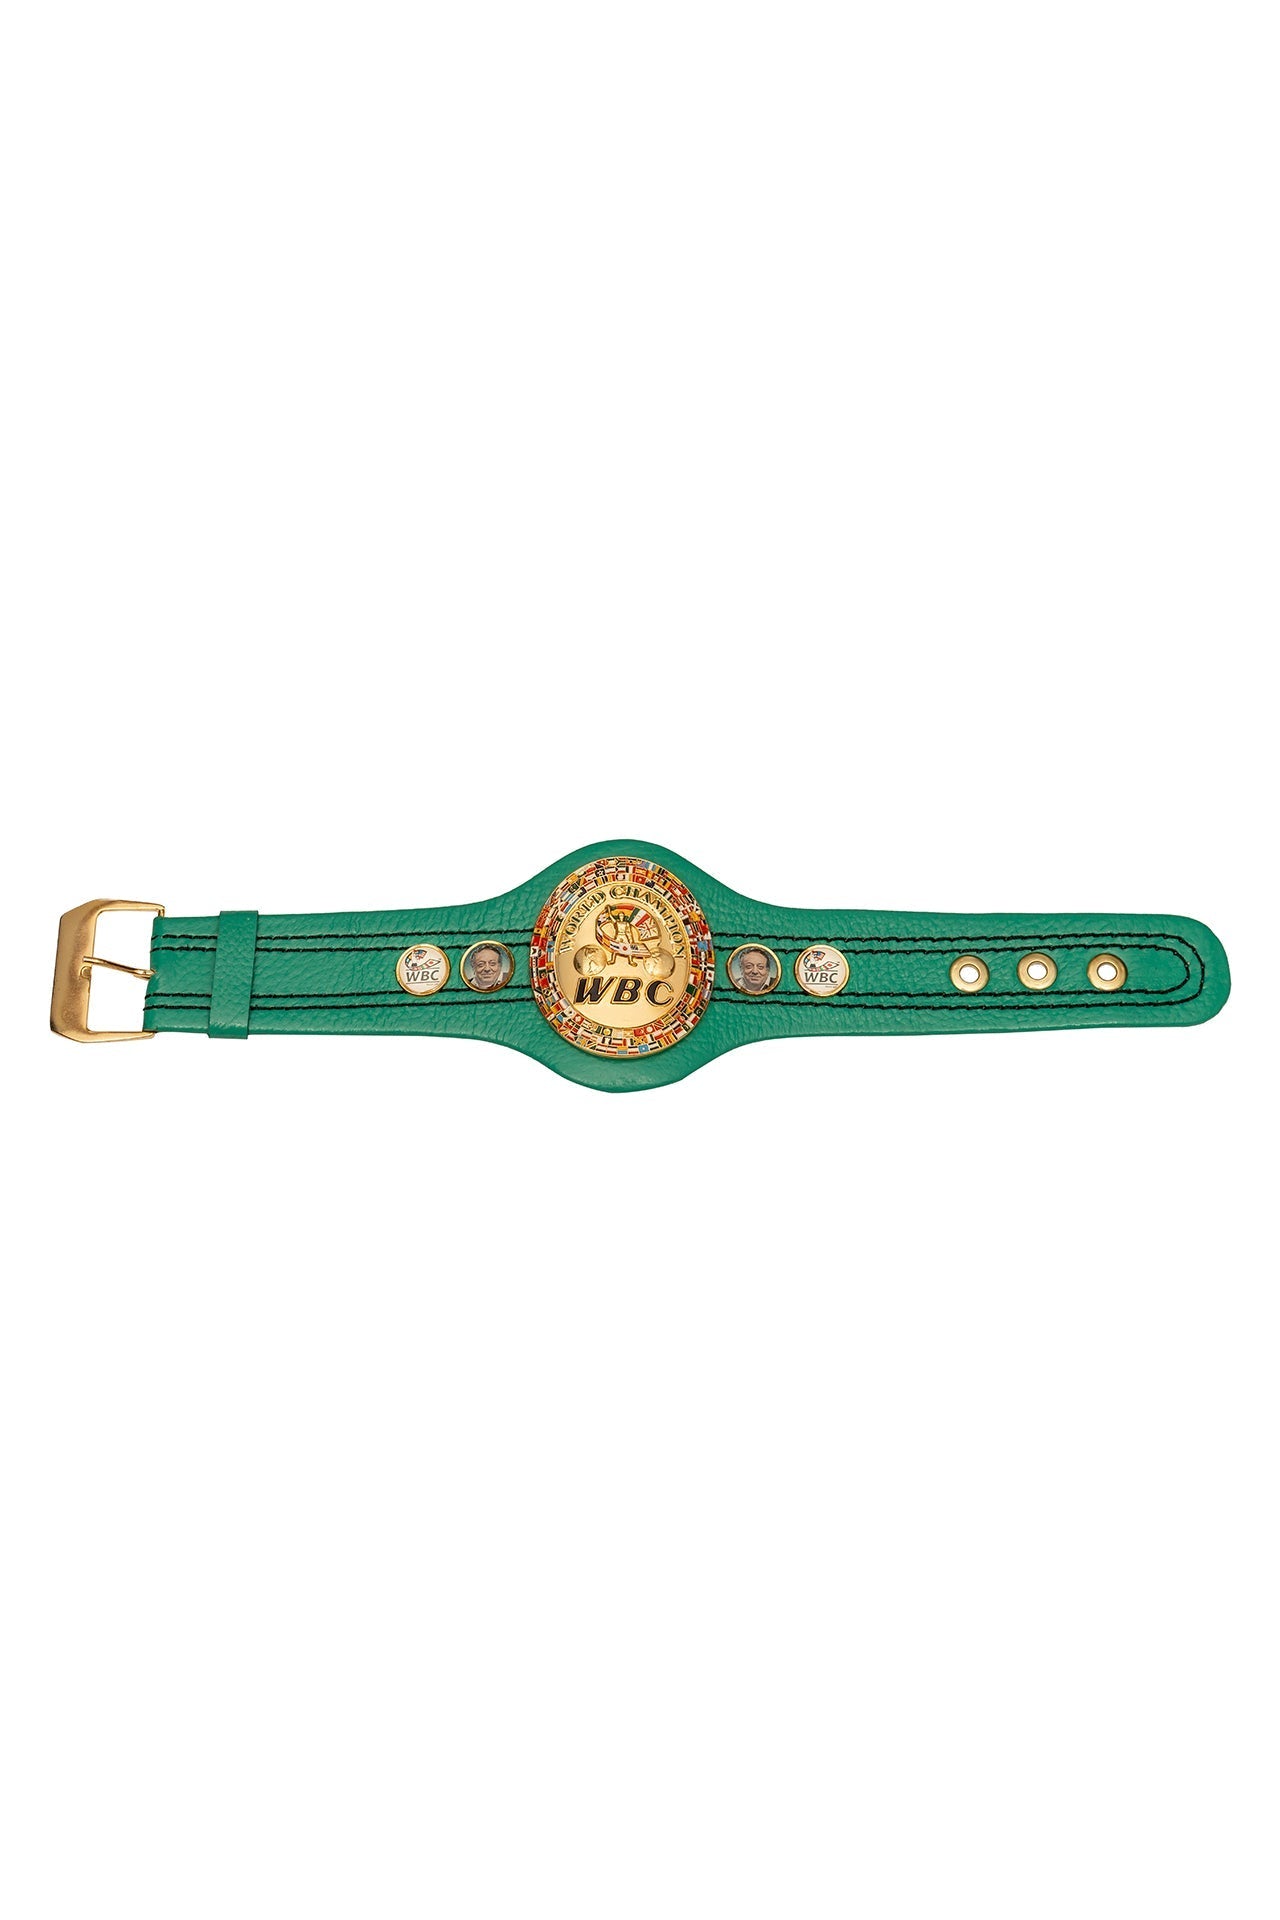 WBC Store Micro Belts WBC - Micro Belt Fourth Generation